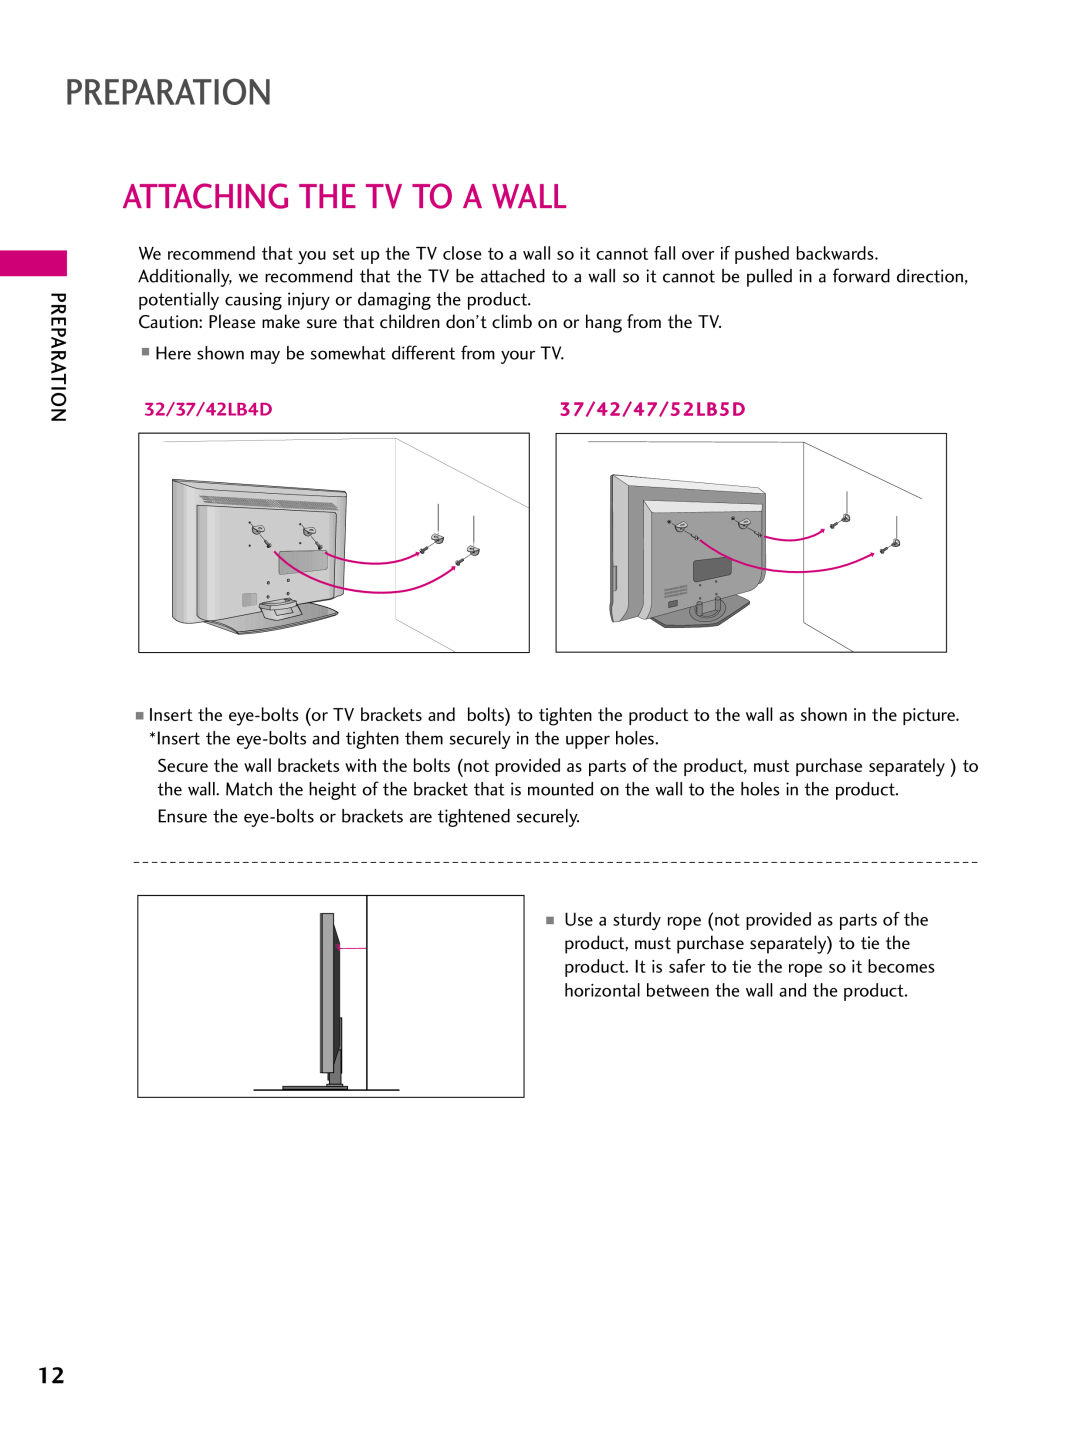 LG Electronics 37LB5D, 3LB5D owner manual Attaching The Tv To A Wall, 32/37/42LB4D, Preparation, 37/42/47/52LB5D 